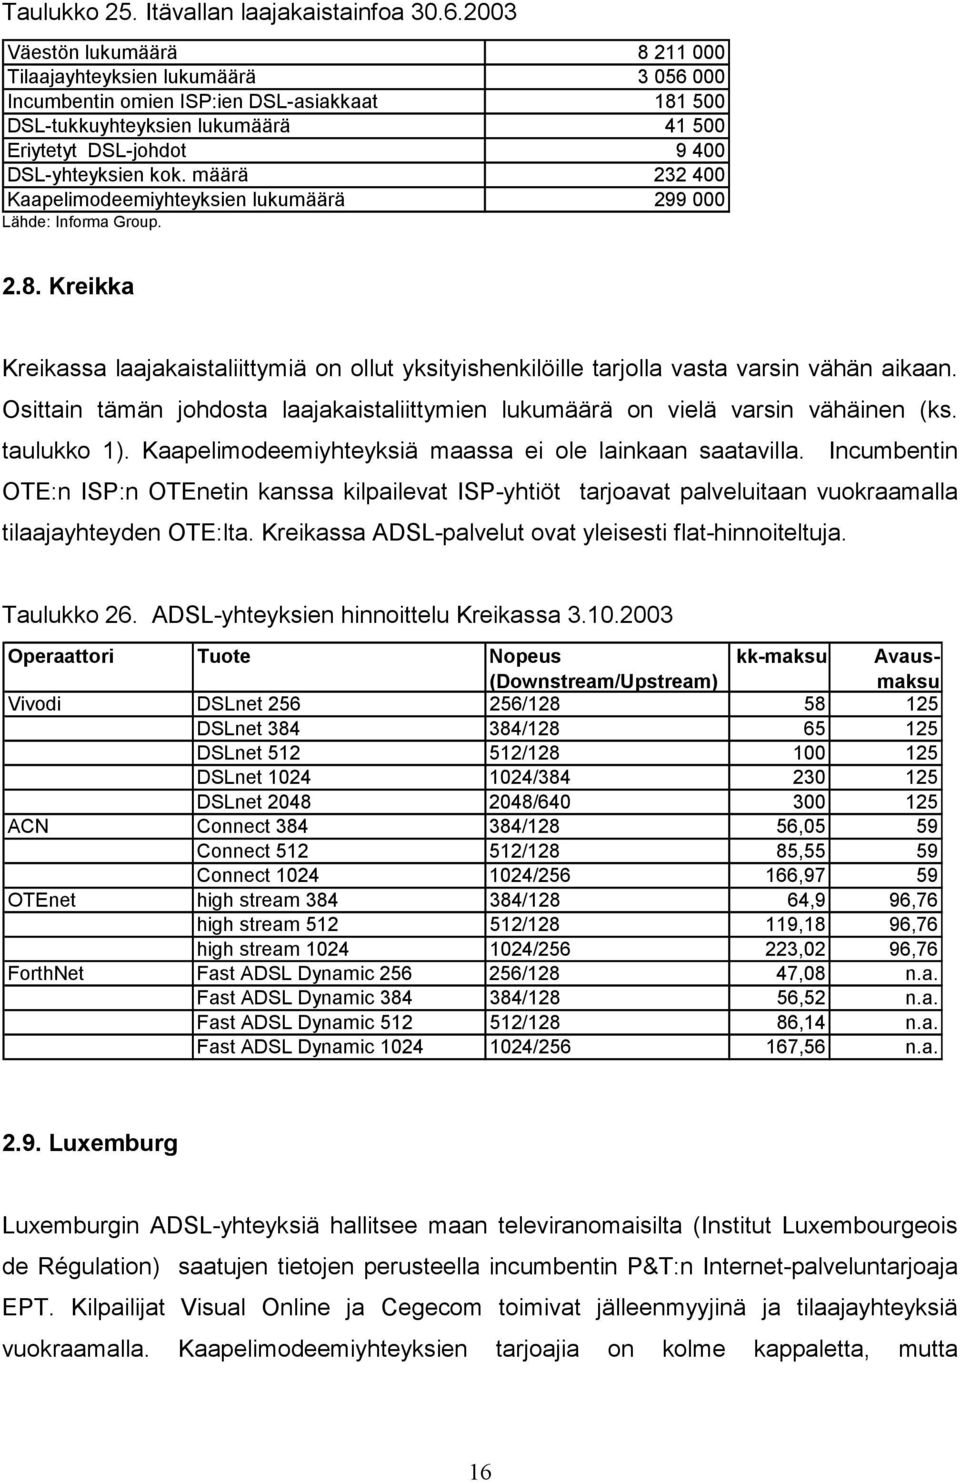 kok. määrä 232 400 Kaapelimodeemiyhteyksien lukumäärä 299 000 2.8. Kreikka Kreikassa laajakaistaliittymiä on ollut yksityishenkilöille tarjolla vasta varsin vähän aikaan.